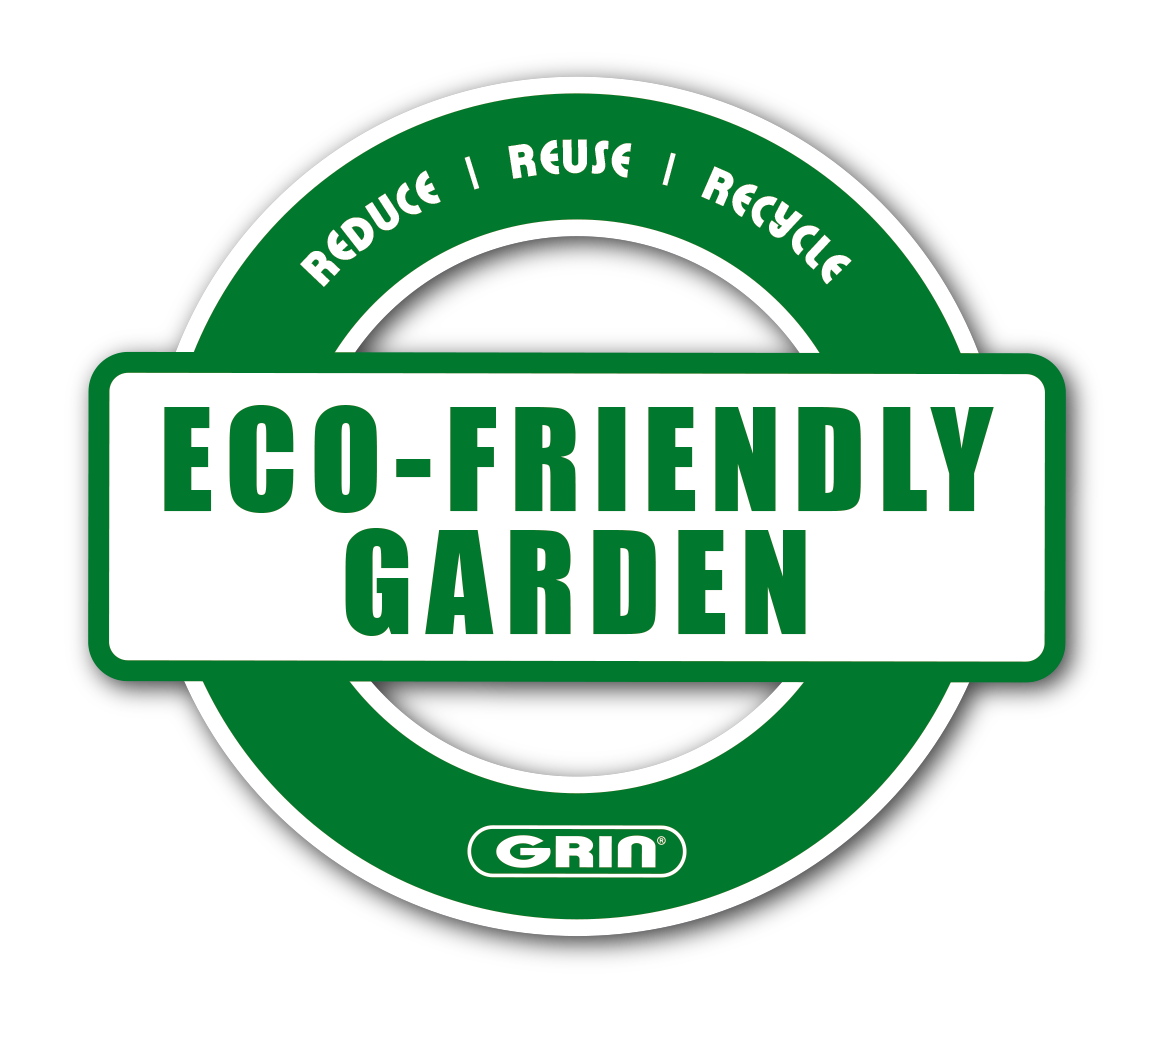 GRIN-Eco Friendly Garden-DE